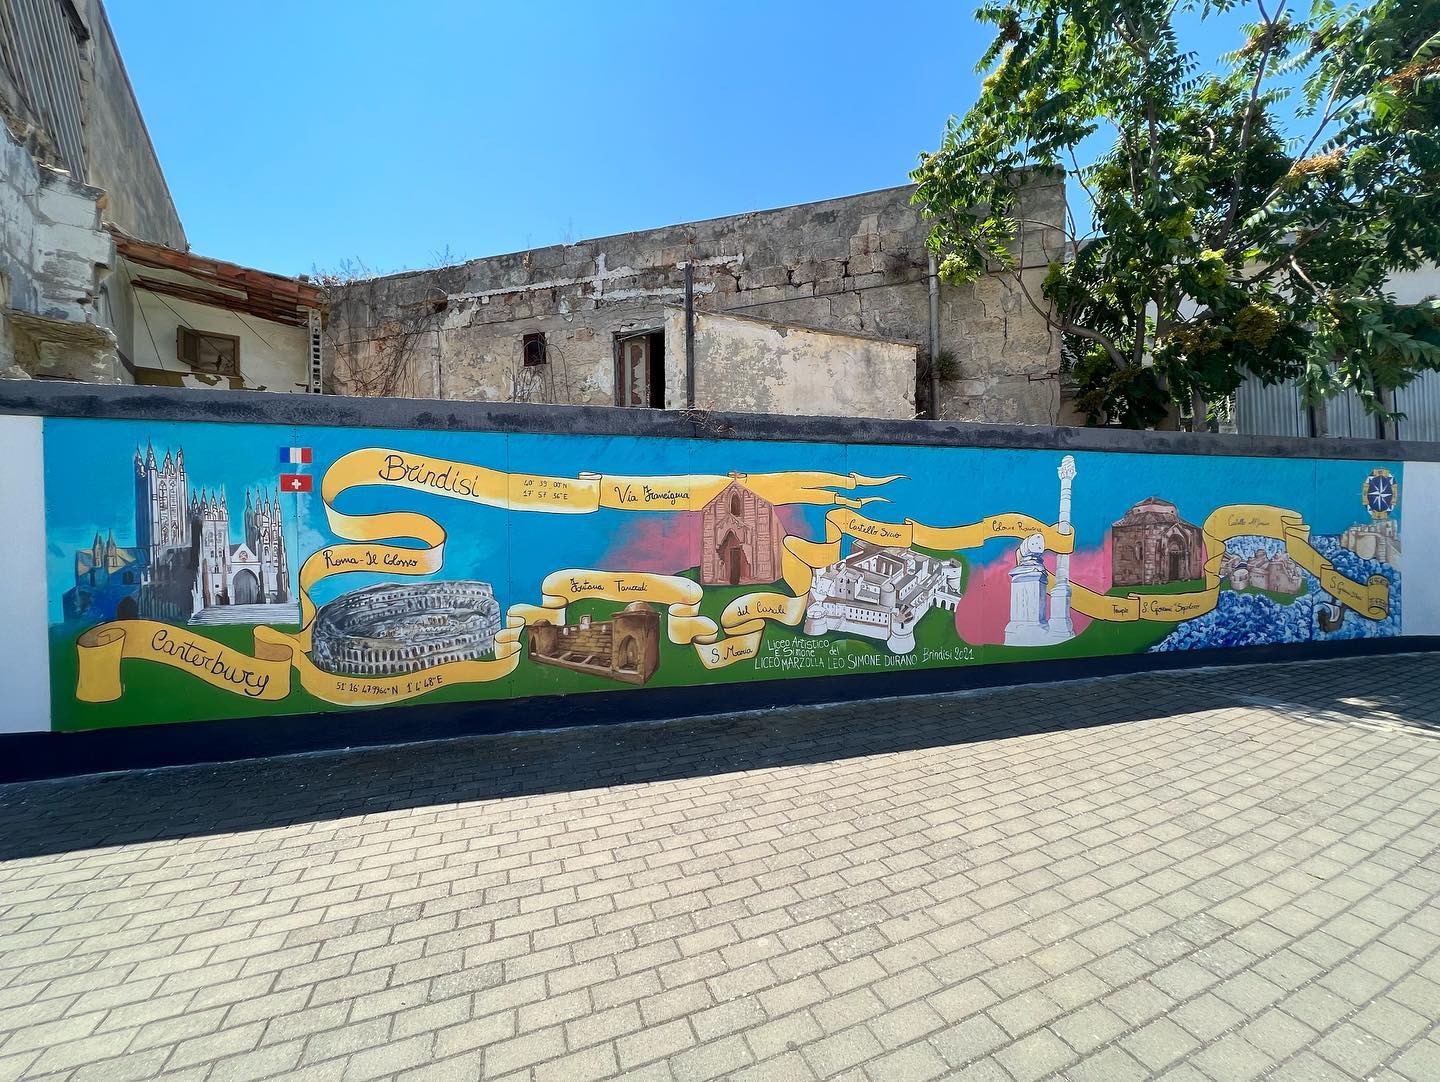 Brindisi e le Antiche Strade: inaugurato il murales “Brindisi crocevia di rotte, percorsi e cammini”. Un dono alla città